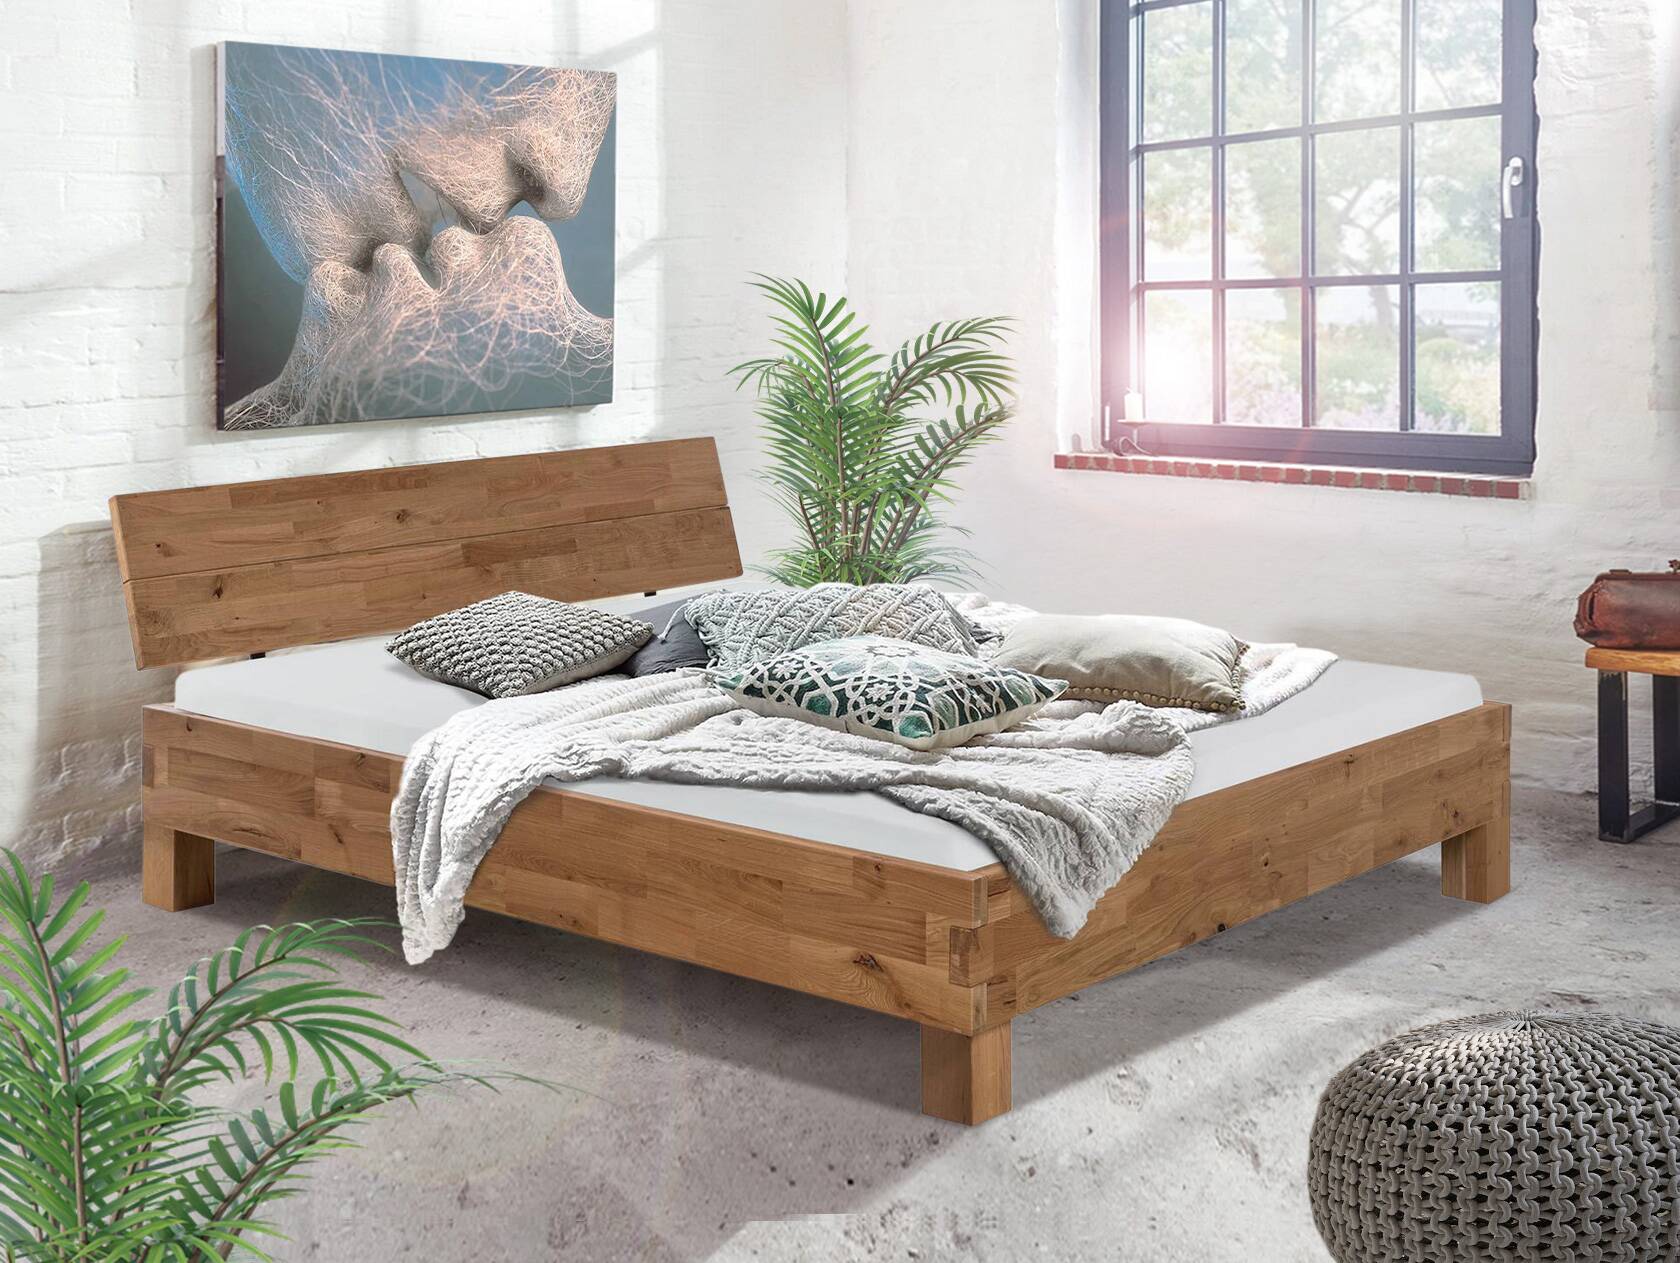 CORDINO 4-Fuß-Bett aus Eiche, Material Massivholz, mit/ohne Kopfteil 180 x 220 cm | Eiche lackiert | gehackt | mit Kopfteil